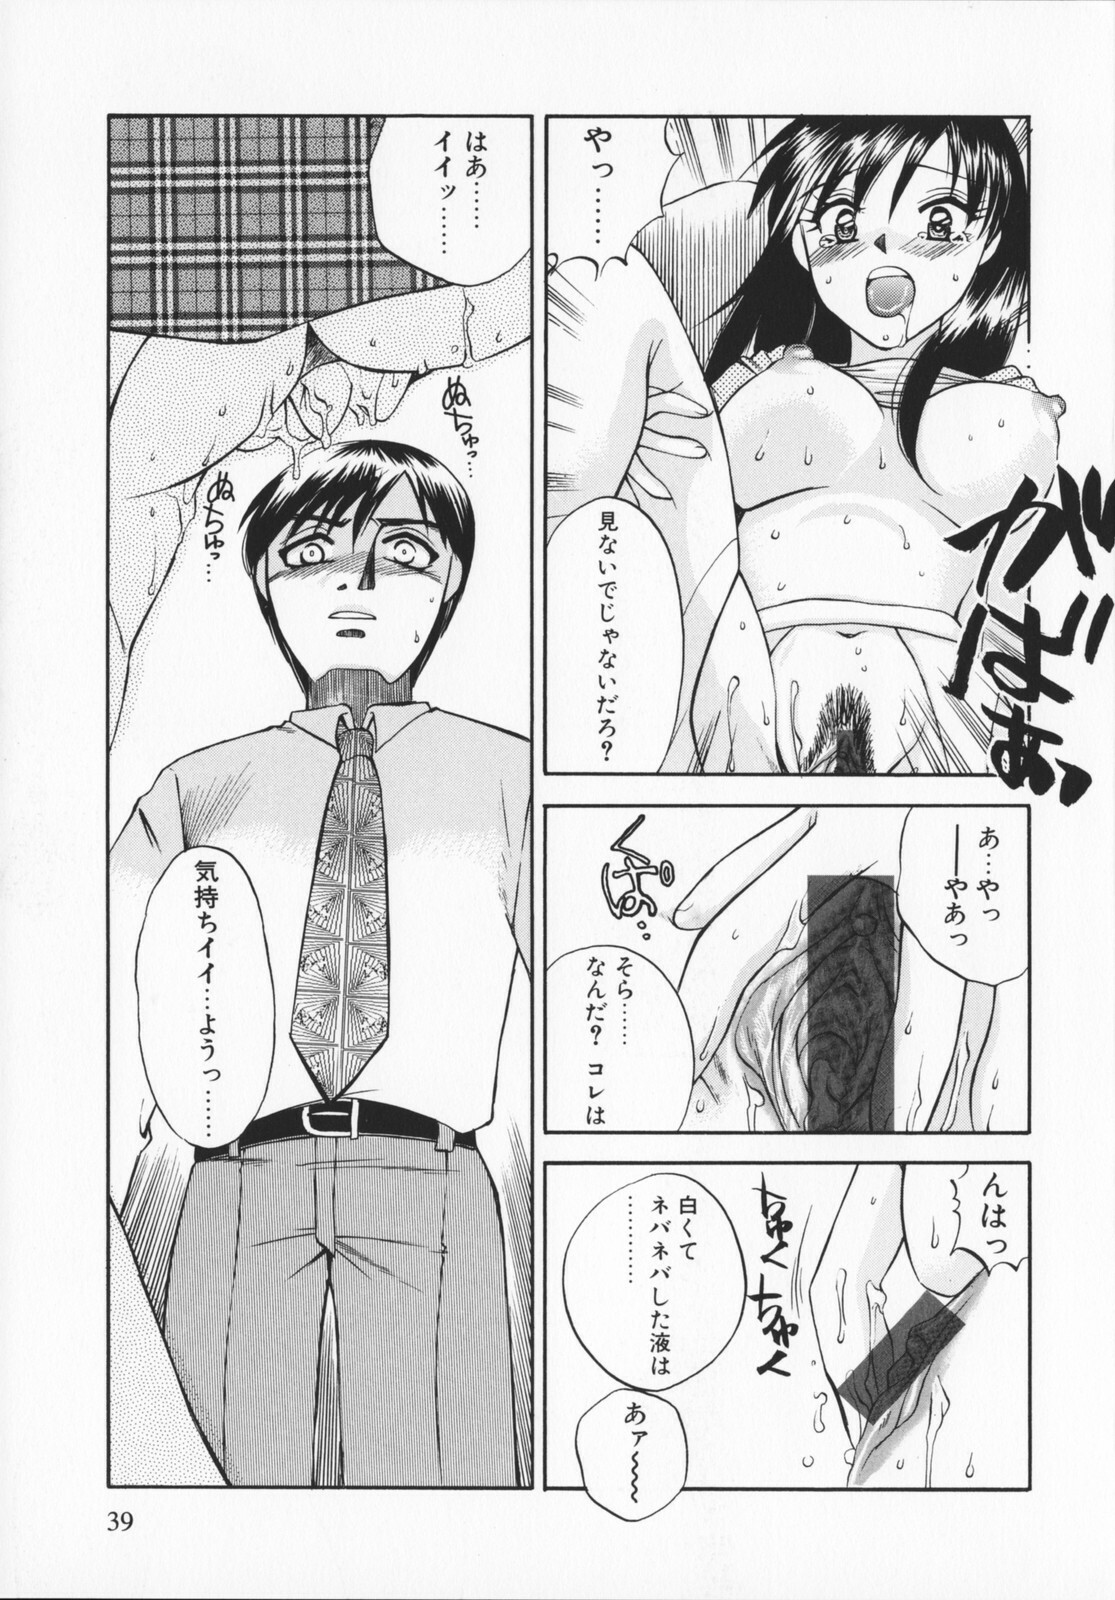 [Ureshino Megumi]Genkaiharetsu (LIMIT EXPLOSION) page 38 full